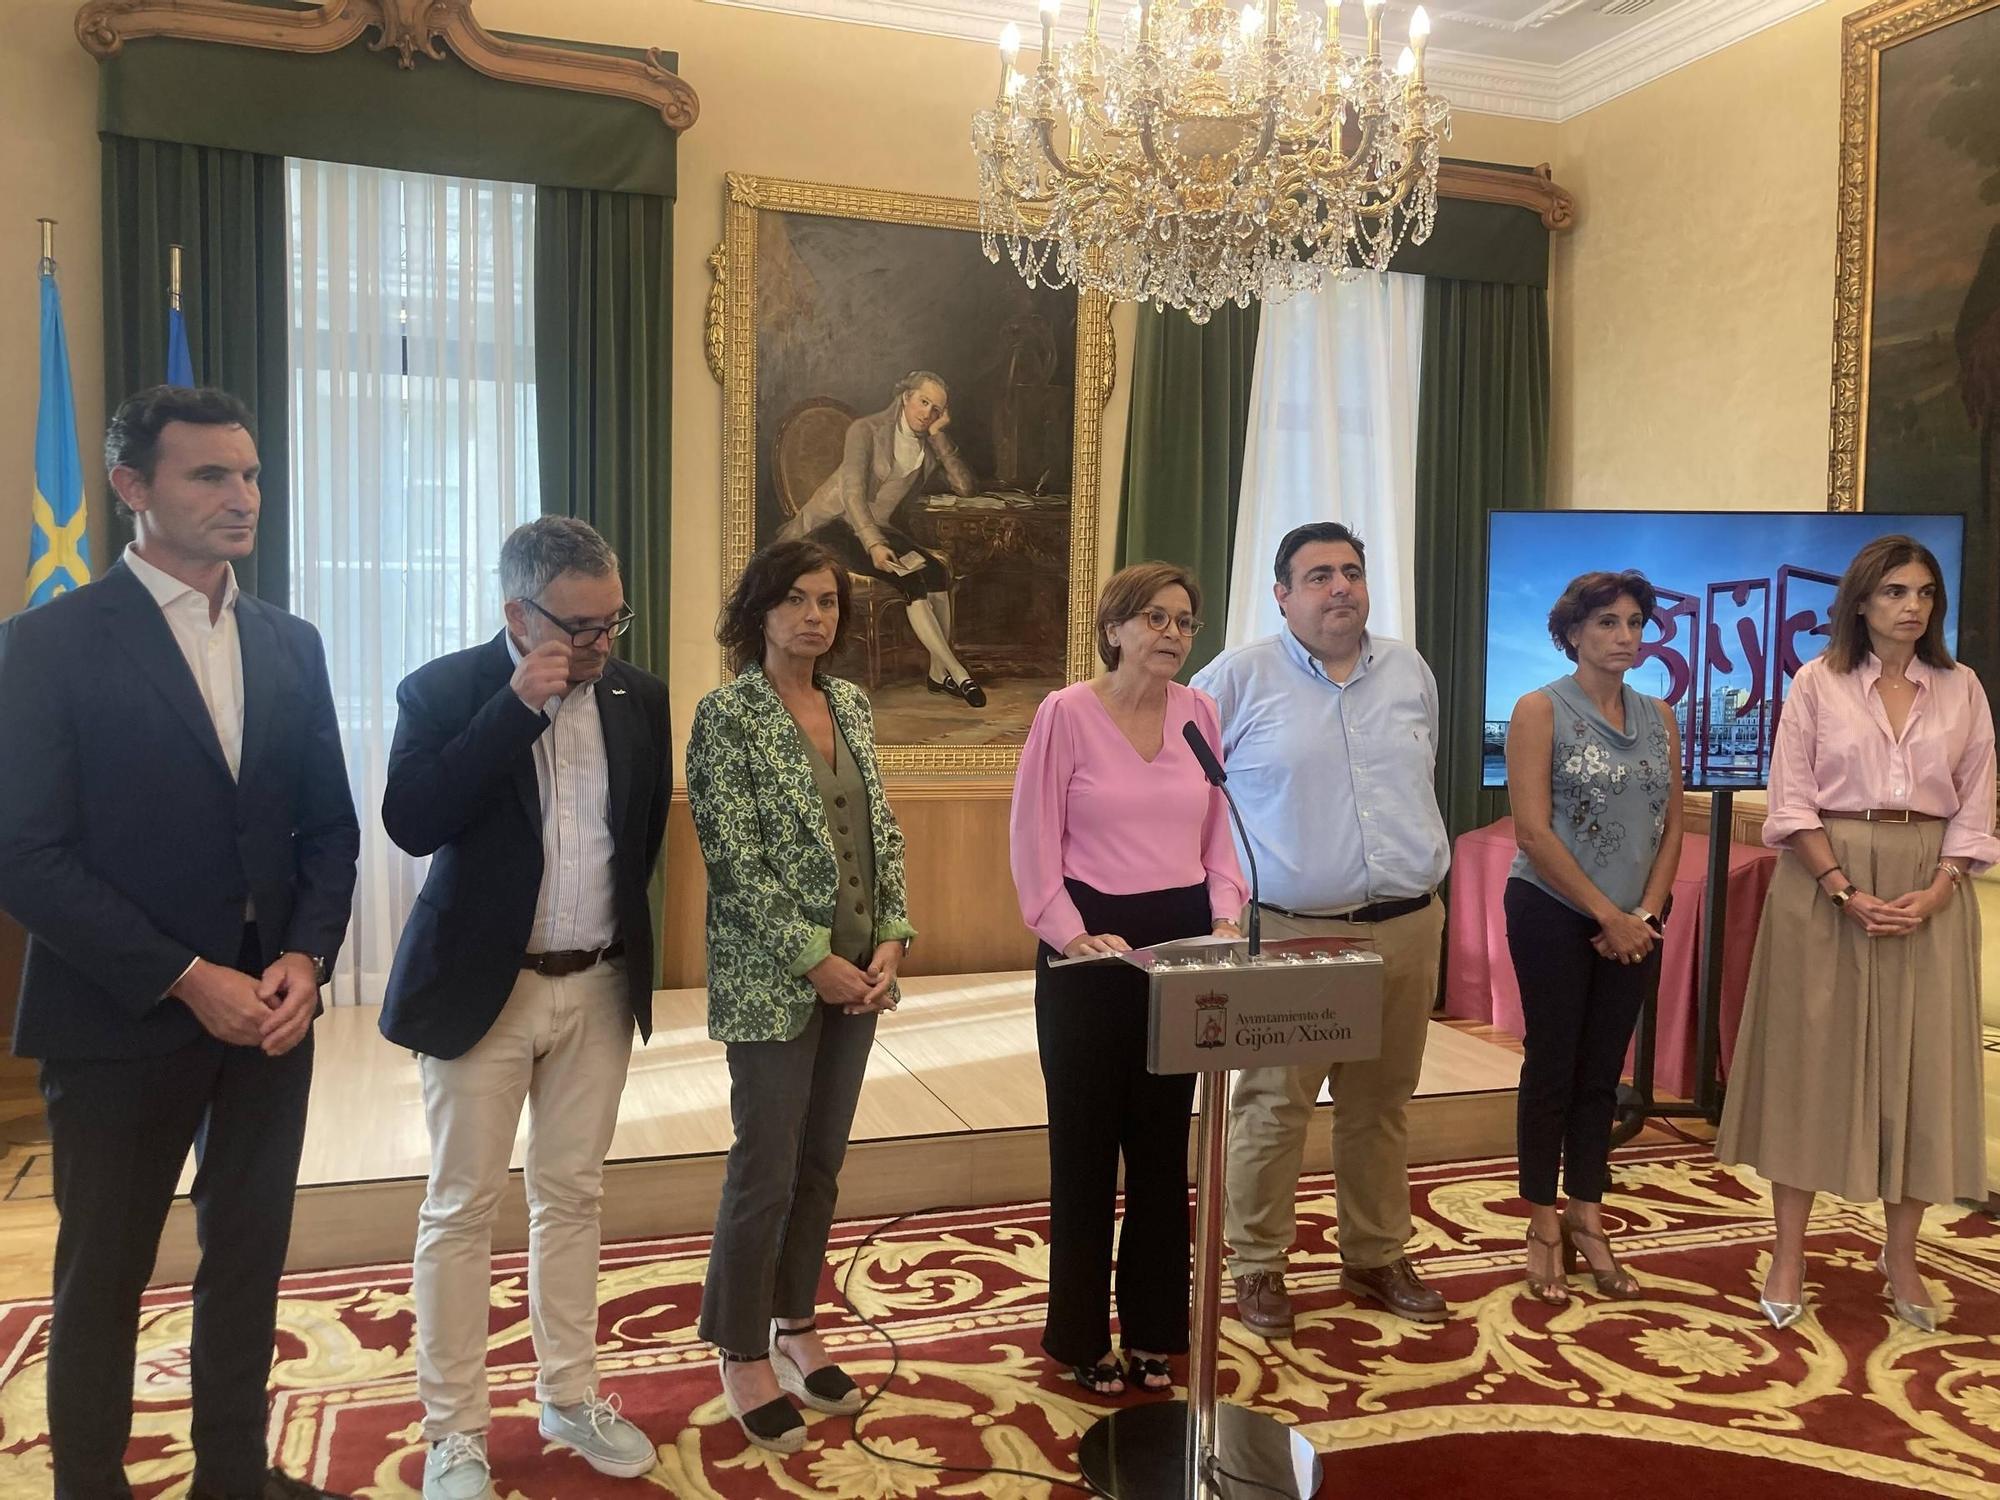 En imágenes: Moriyón anuncia la expulsión de Vox del gobierno gijonés